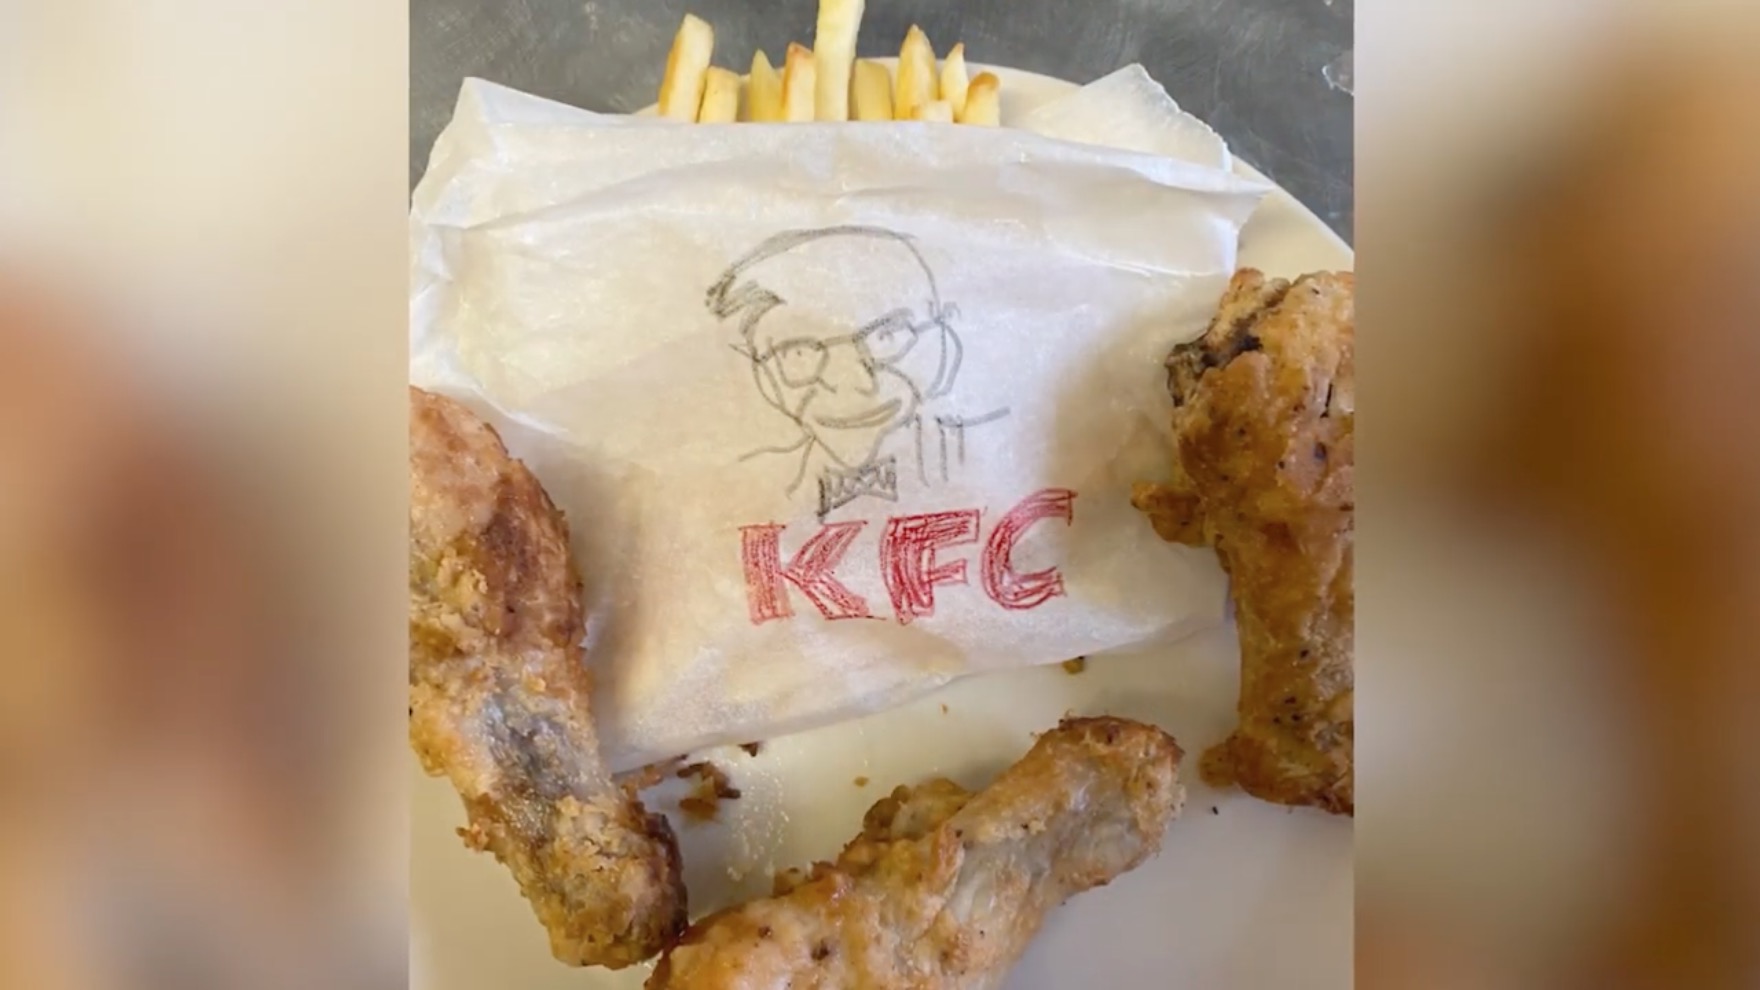 KFC's Gen Z menu